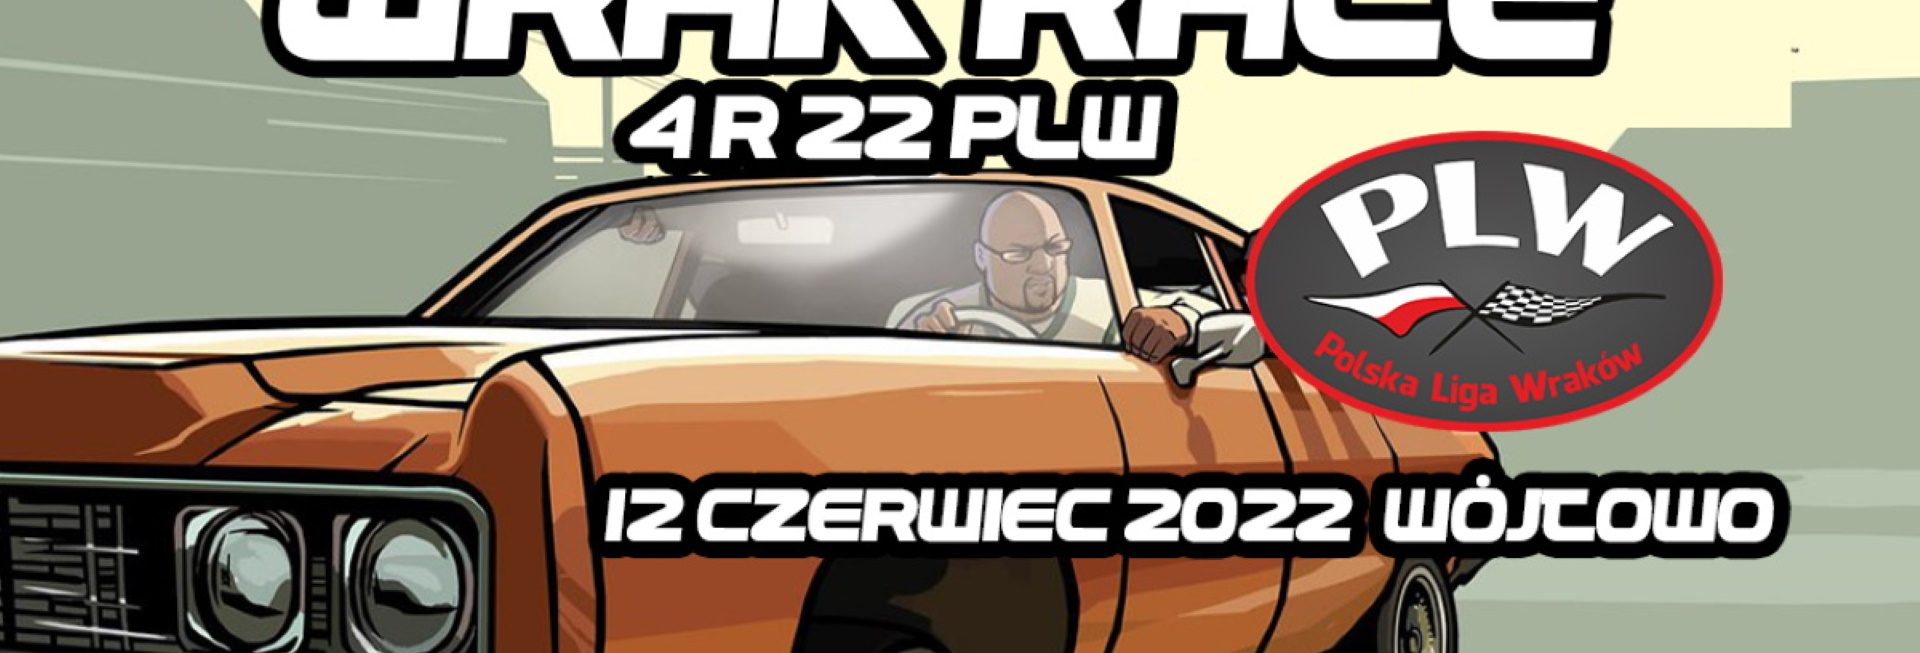 Plakat graficzny zapraszający do Wójtowa na 4 Rundę Polskiej Ligi Wraków Wójtowo 2022.